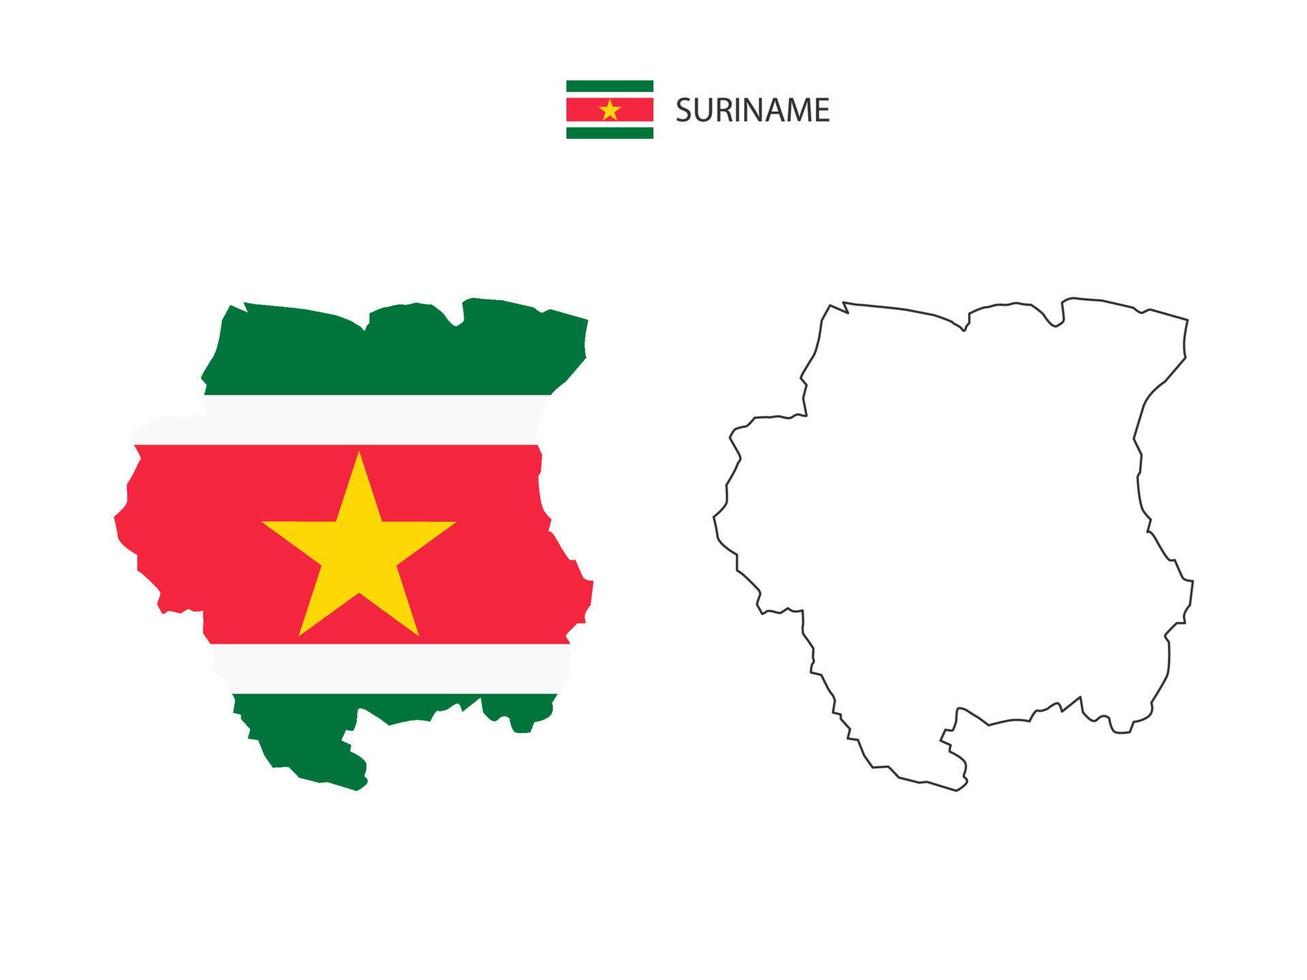 Suriname kaart stad vector verdeeld door schets eenvoud stijl. hebben 2 versies, zwart dun lijn versie en kleur van land vlag versie. beide kaart waren Aan de wit achtergrond.